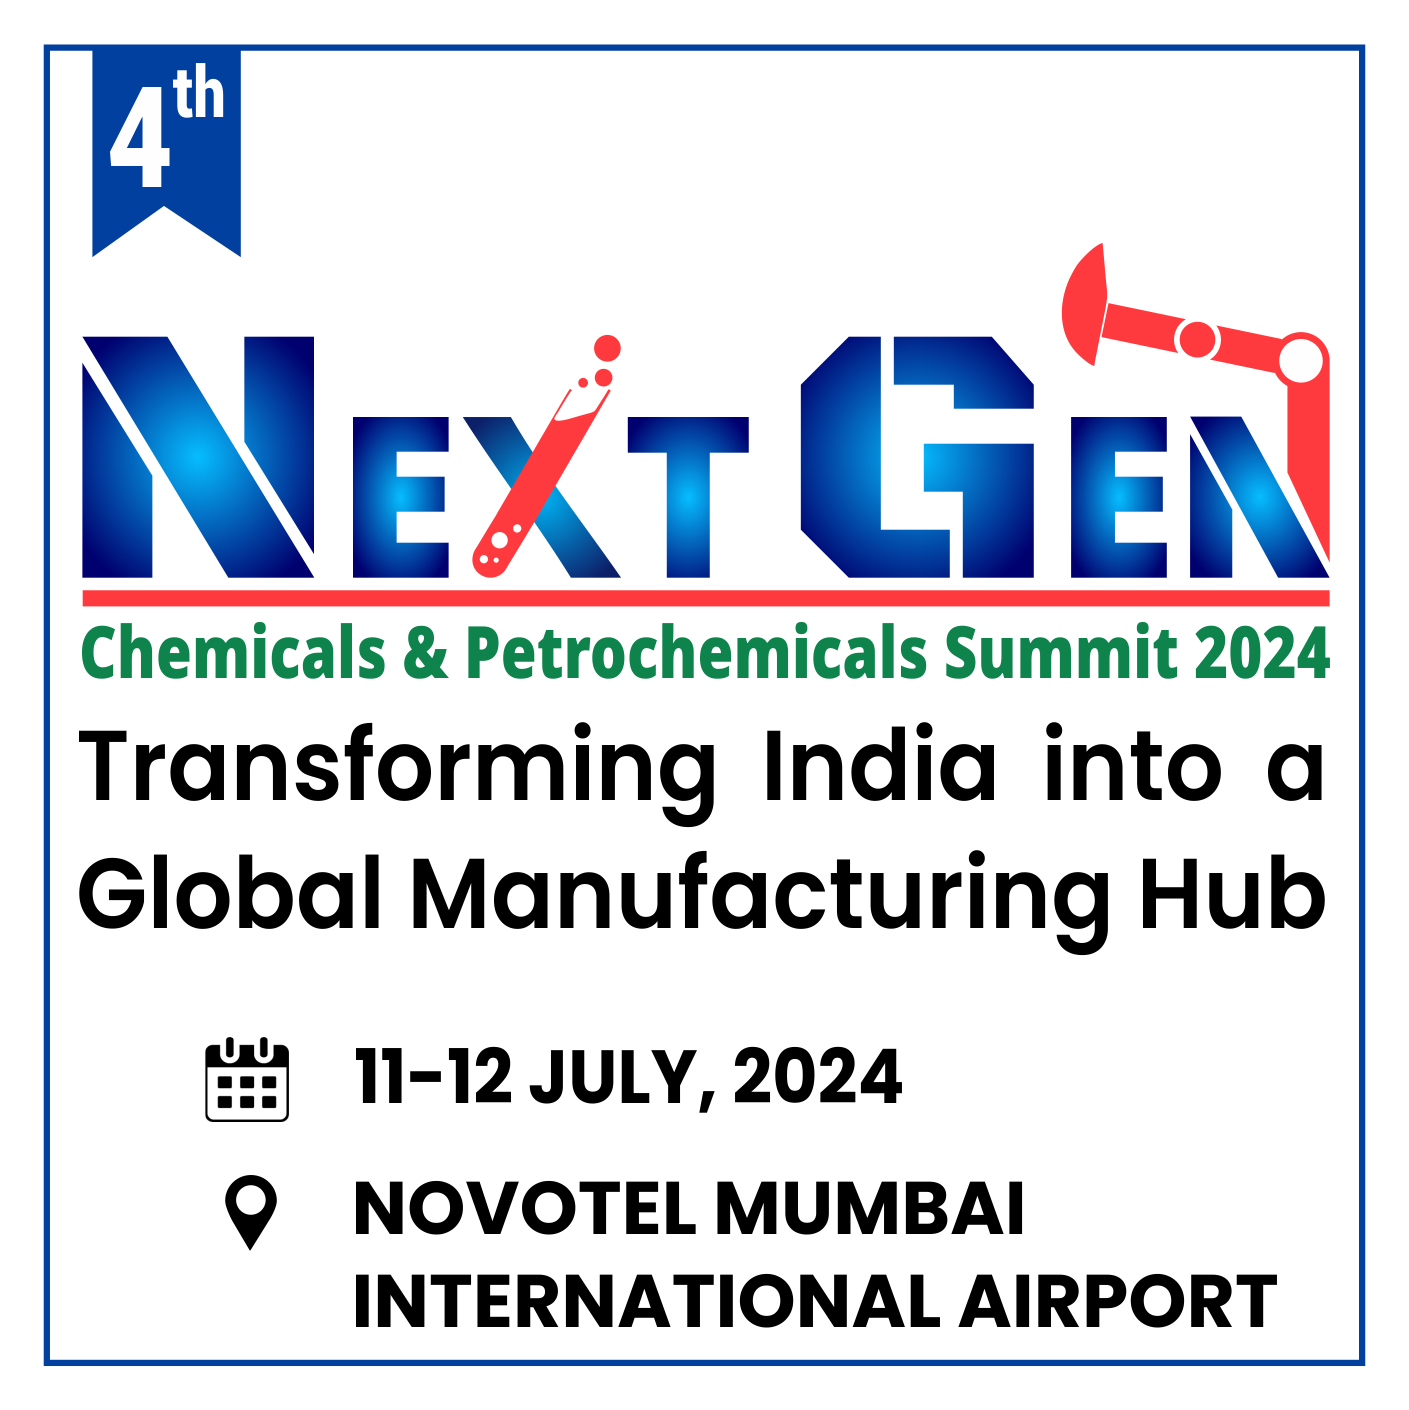 NextGen Chemicals & Petrochemicals Summit 2024